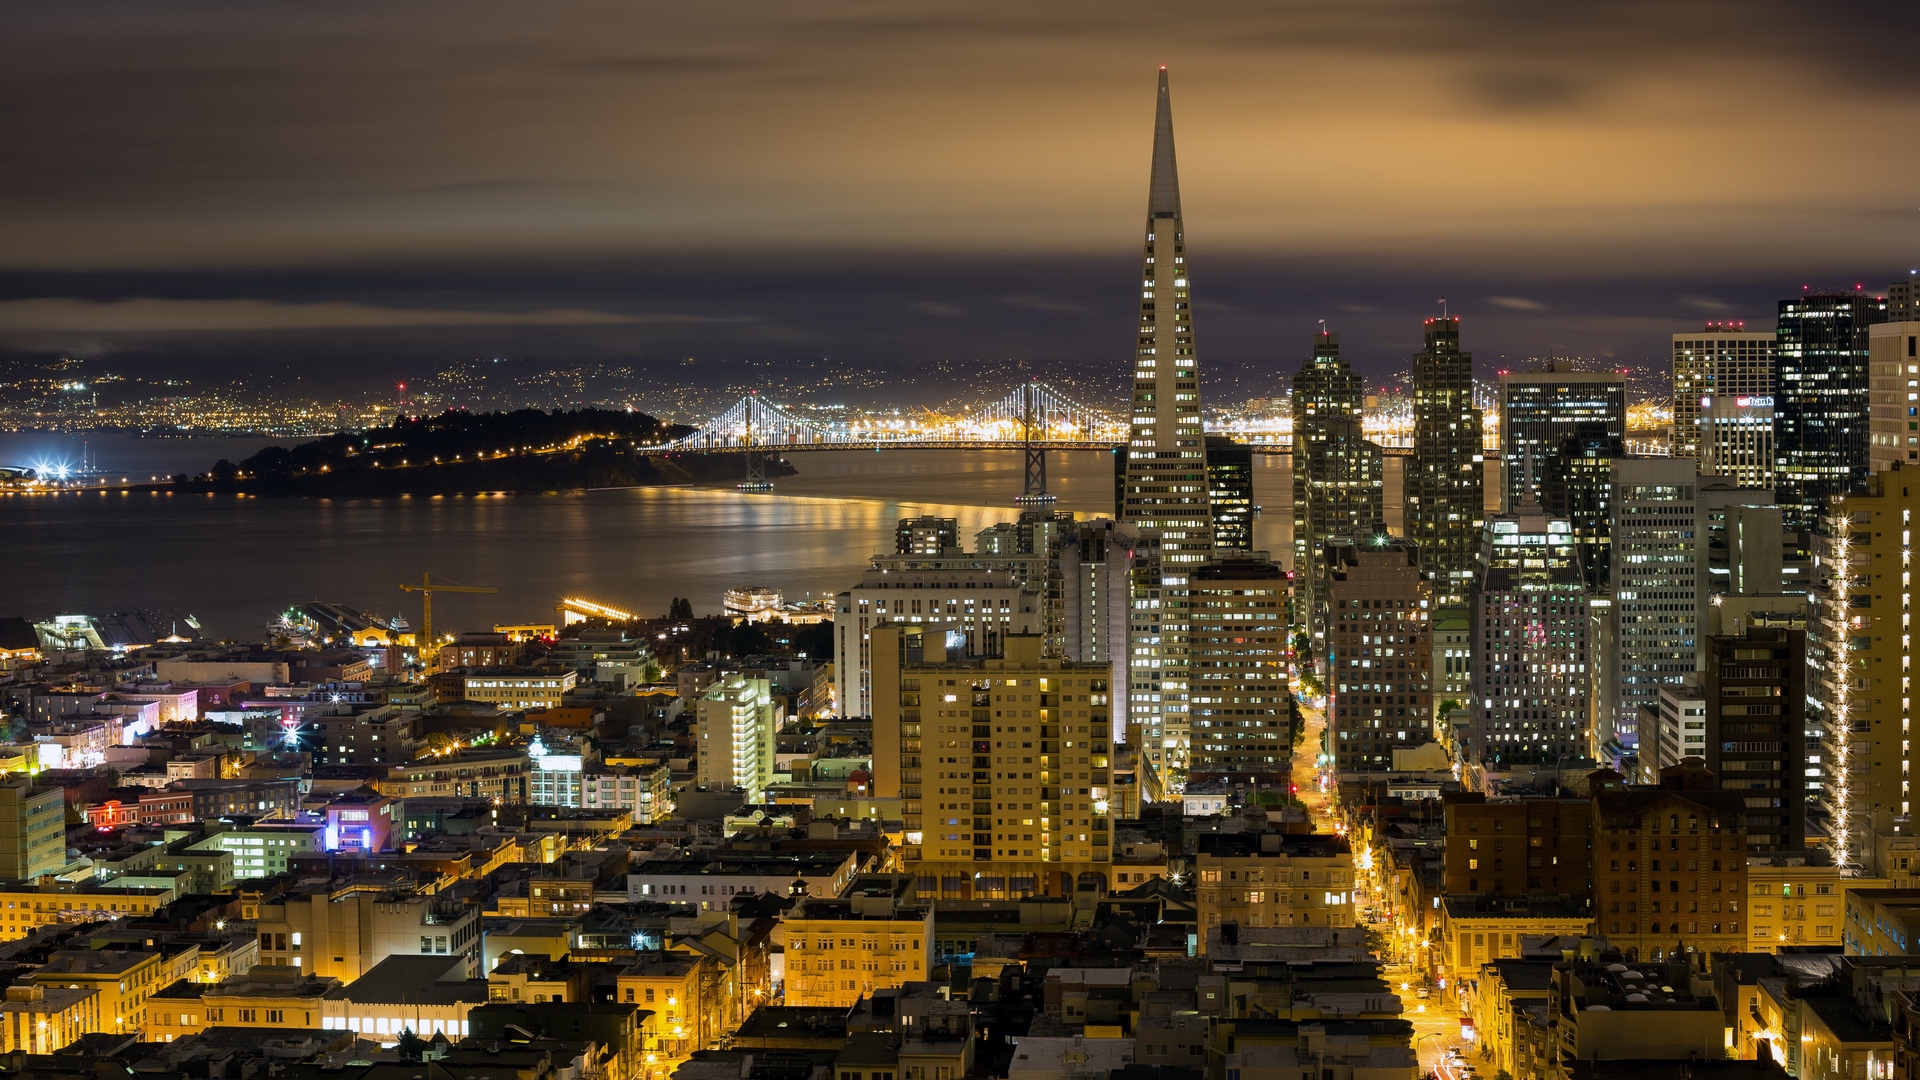 Скачать обои бесплатно Города, Сан Франциско, Сделано Человеком картинка на рабочий стол ПК